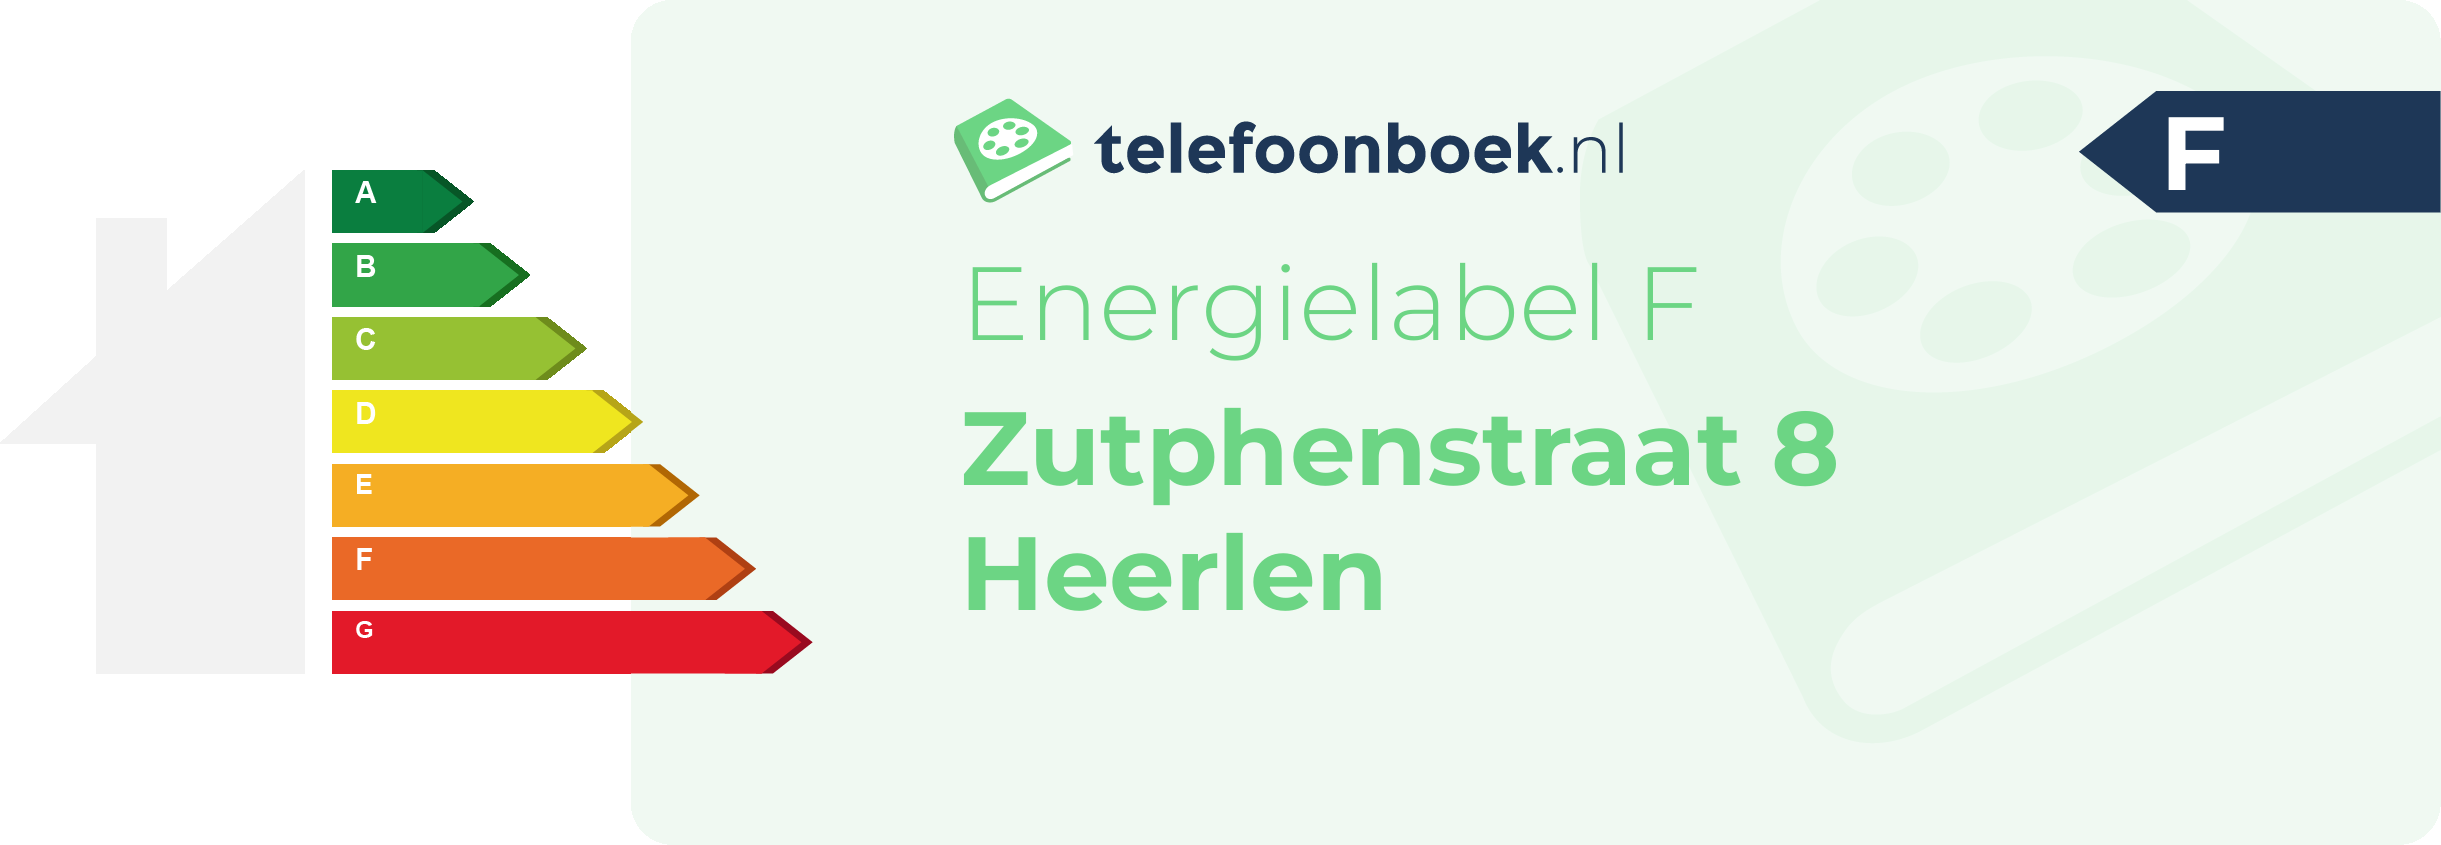 Energielabel Zutphenstraat 8 Heerlen